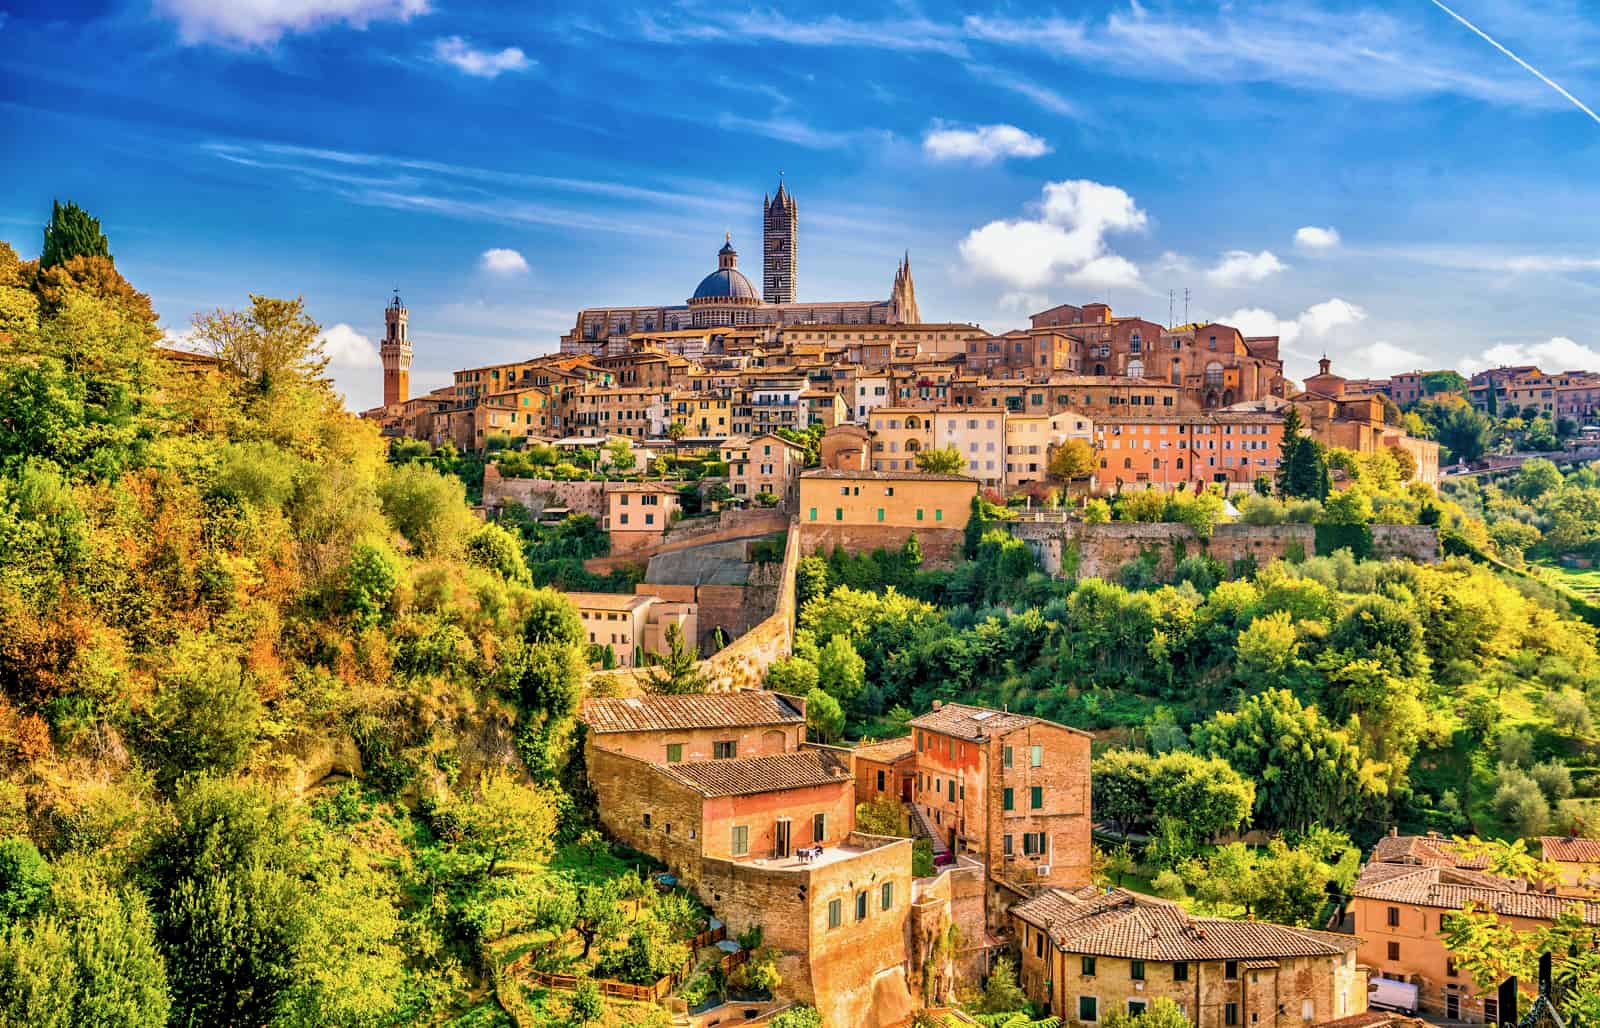 Scegli l'Immobile Perfetto a Siena: Immobili in Vendita che Rispondono alle Tue Esigenze